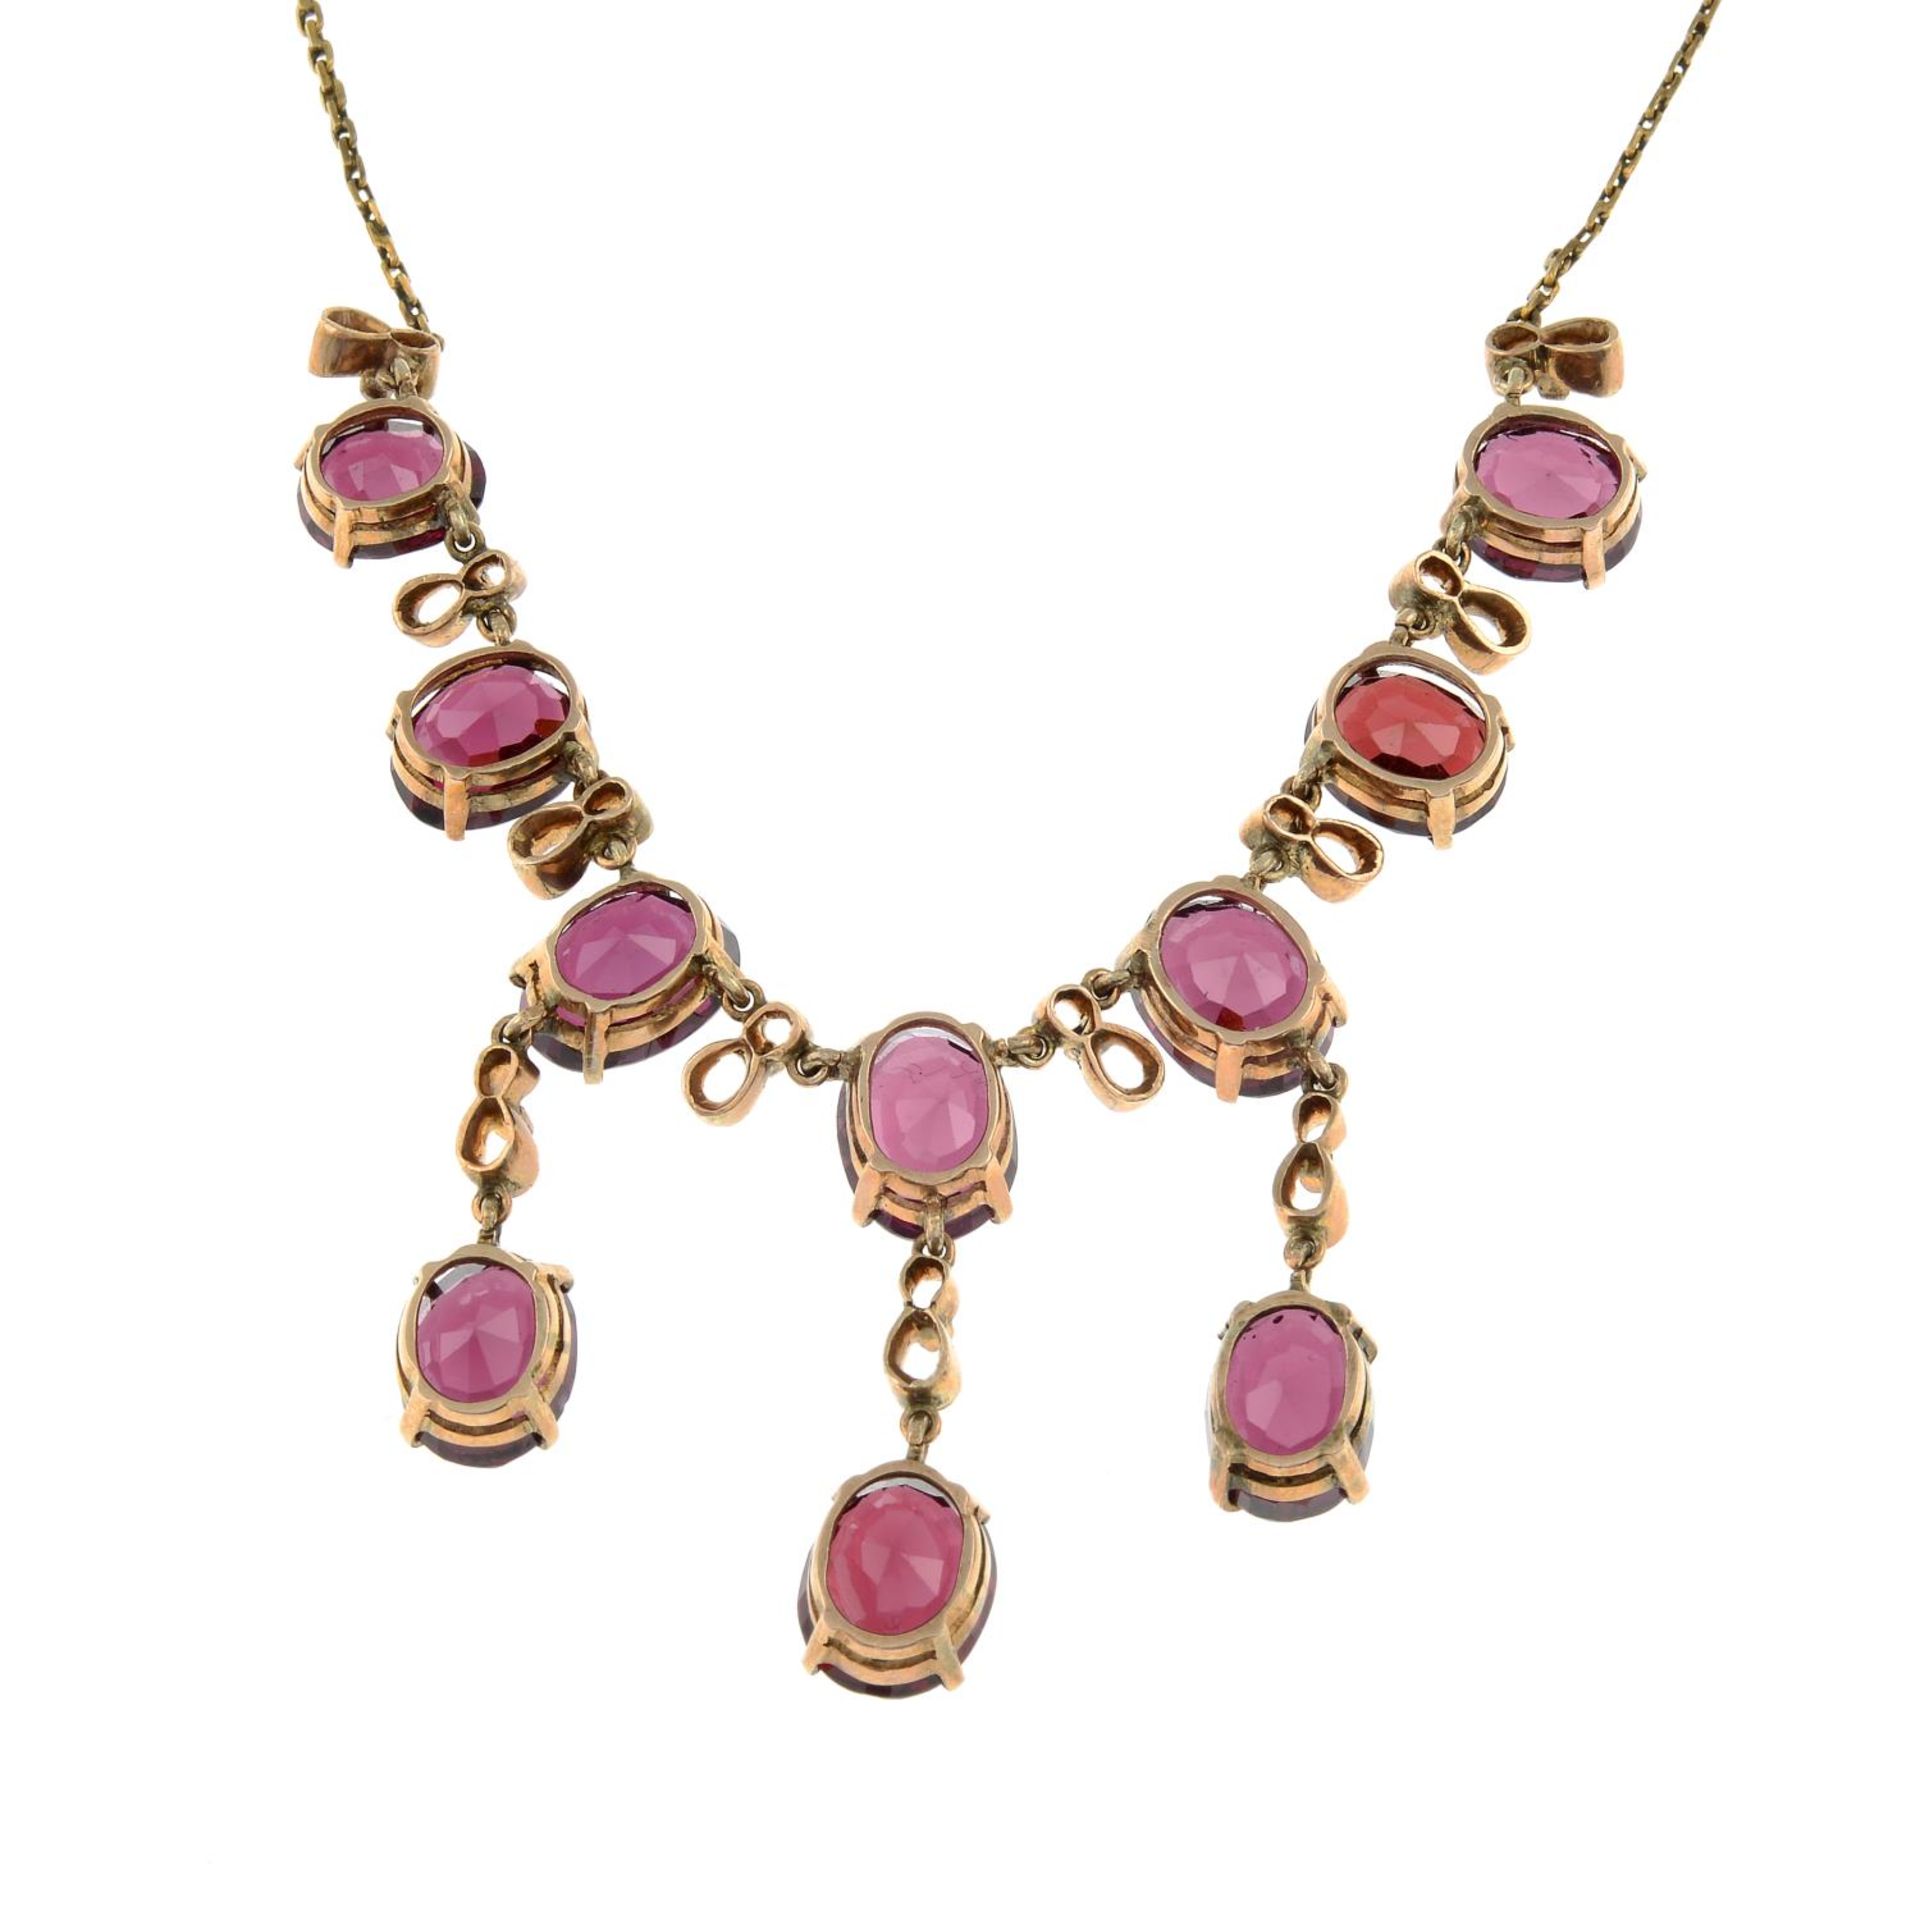 A garnet fringe necklace.Length 51.5cms. - Image 2 of 2